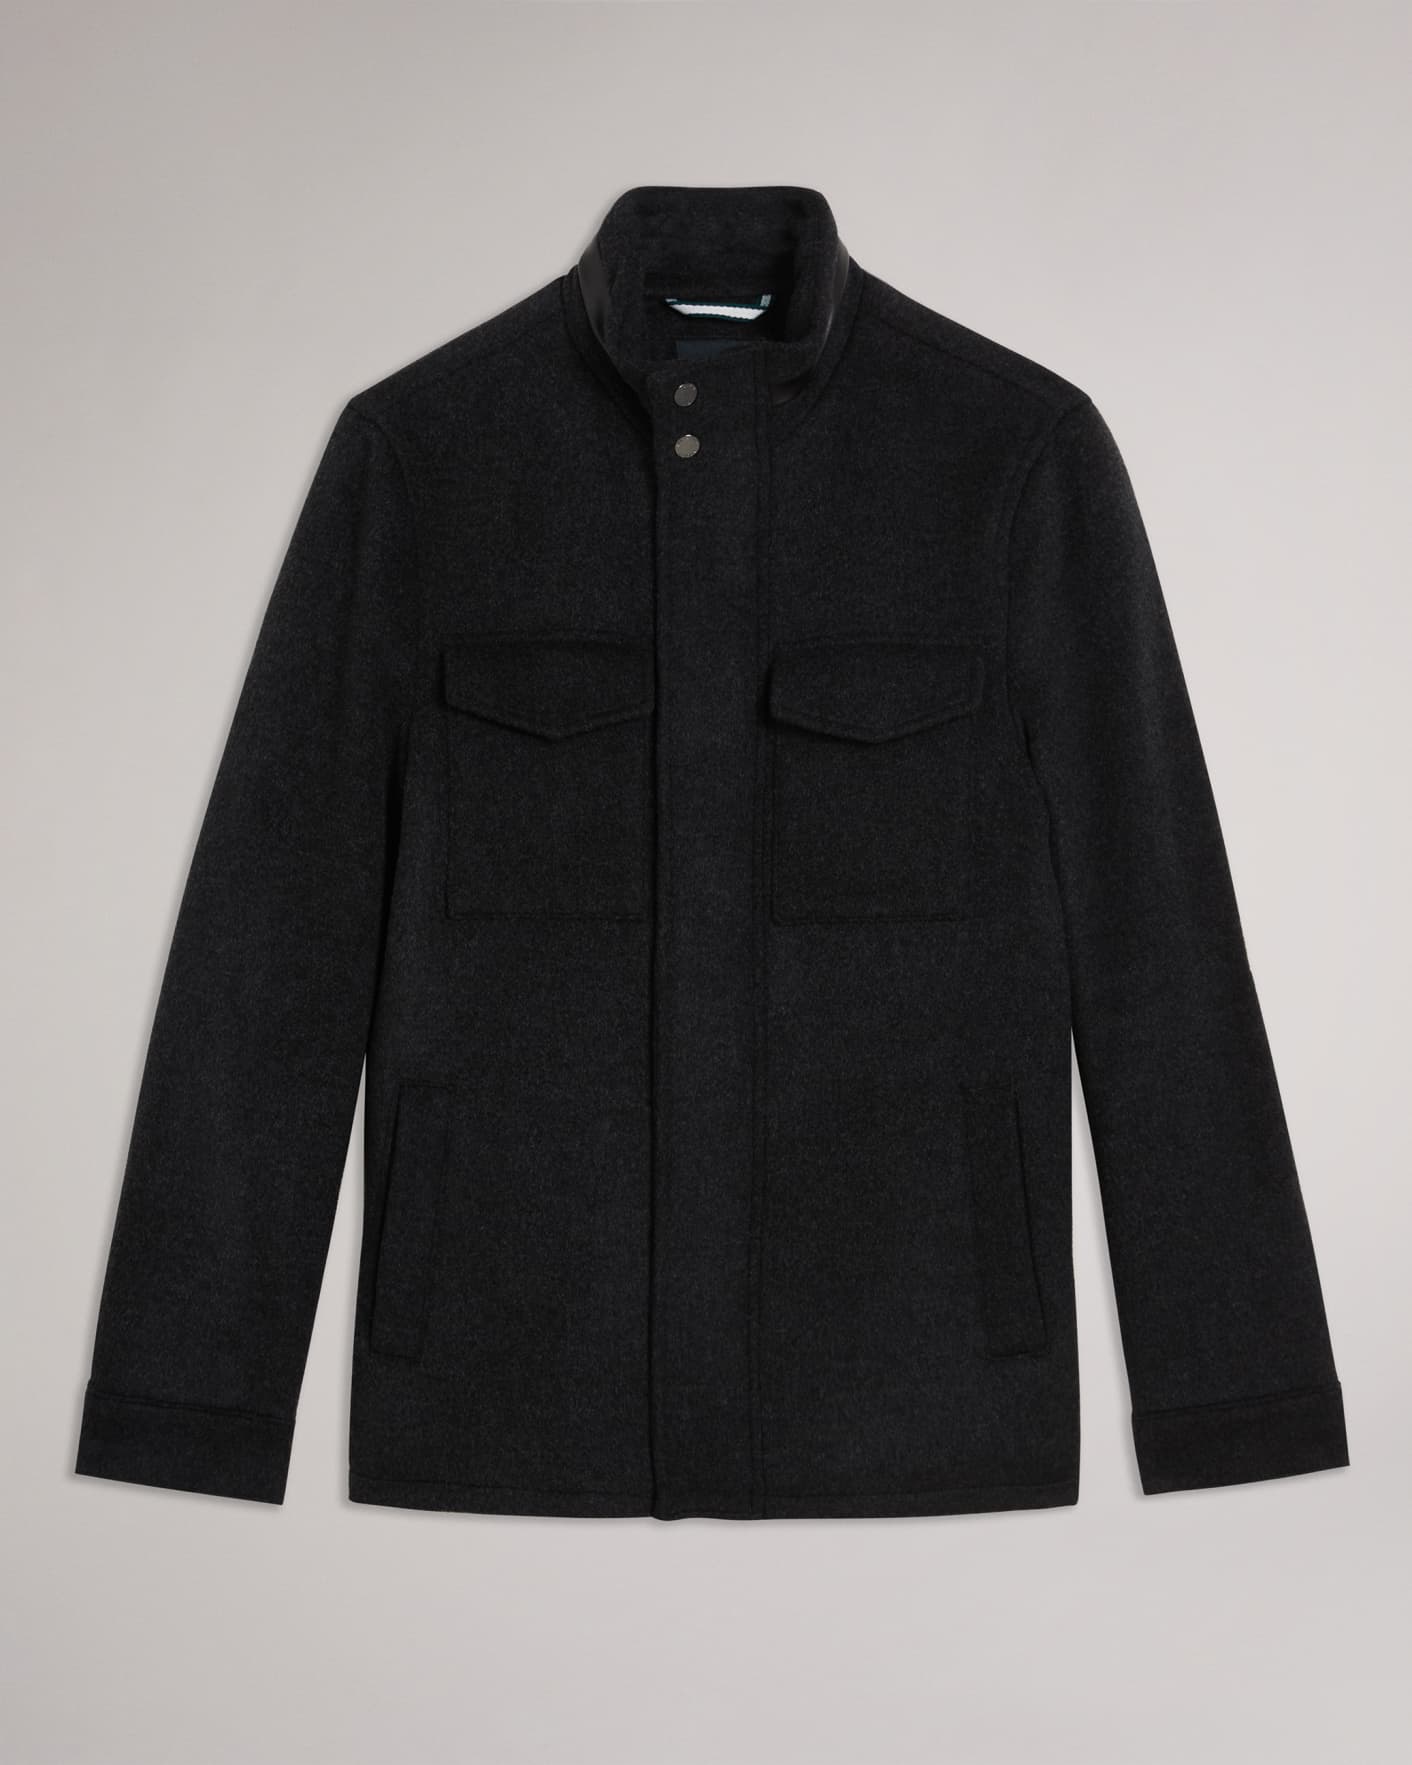 おトク】 frankleader chacoal dyed jacket - ジャケット/アウター